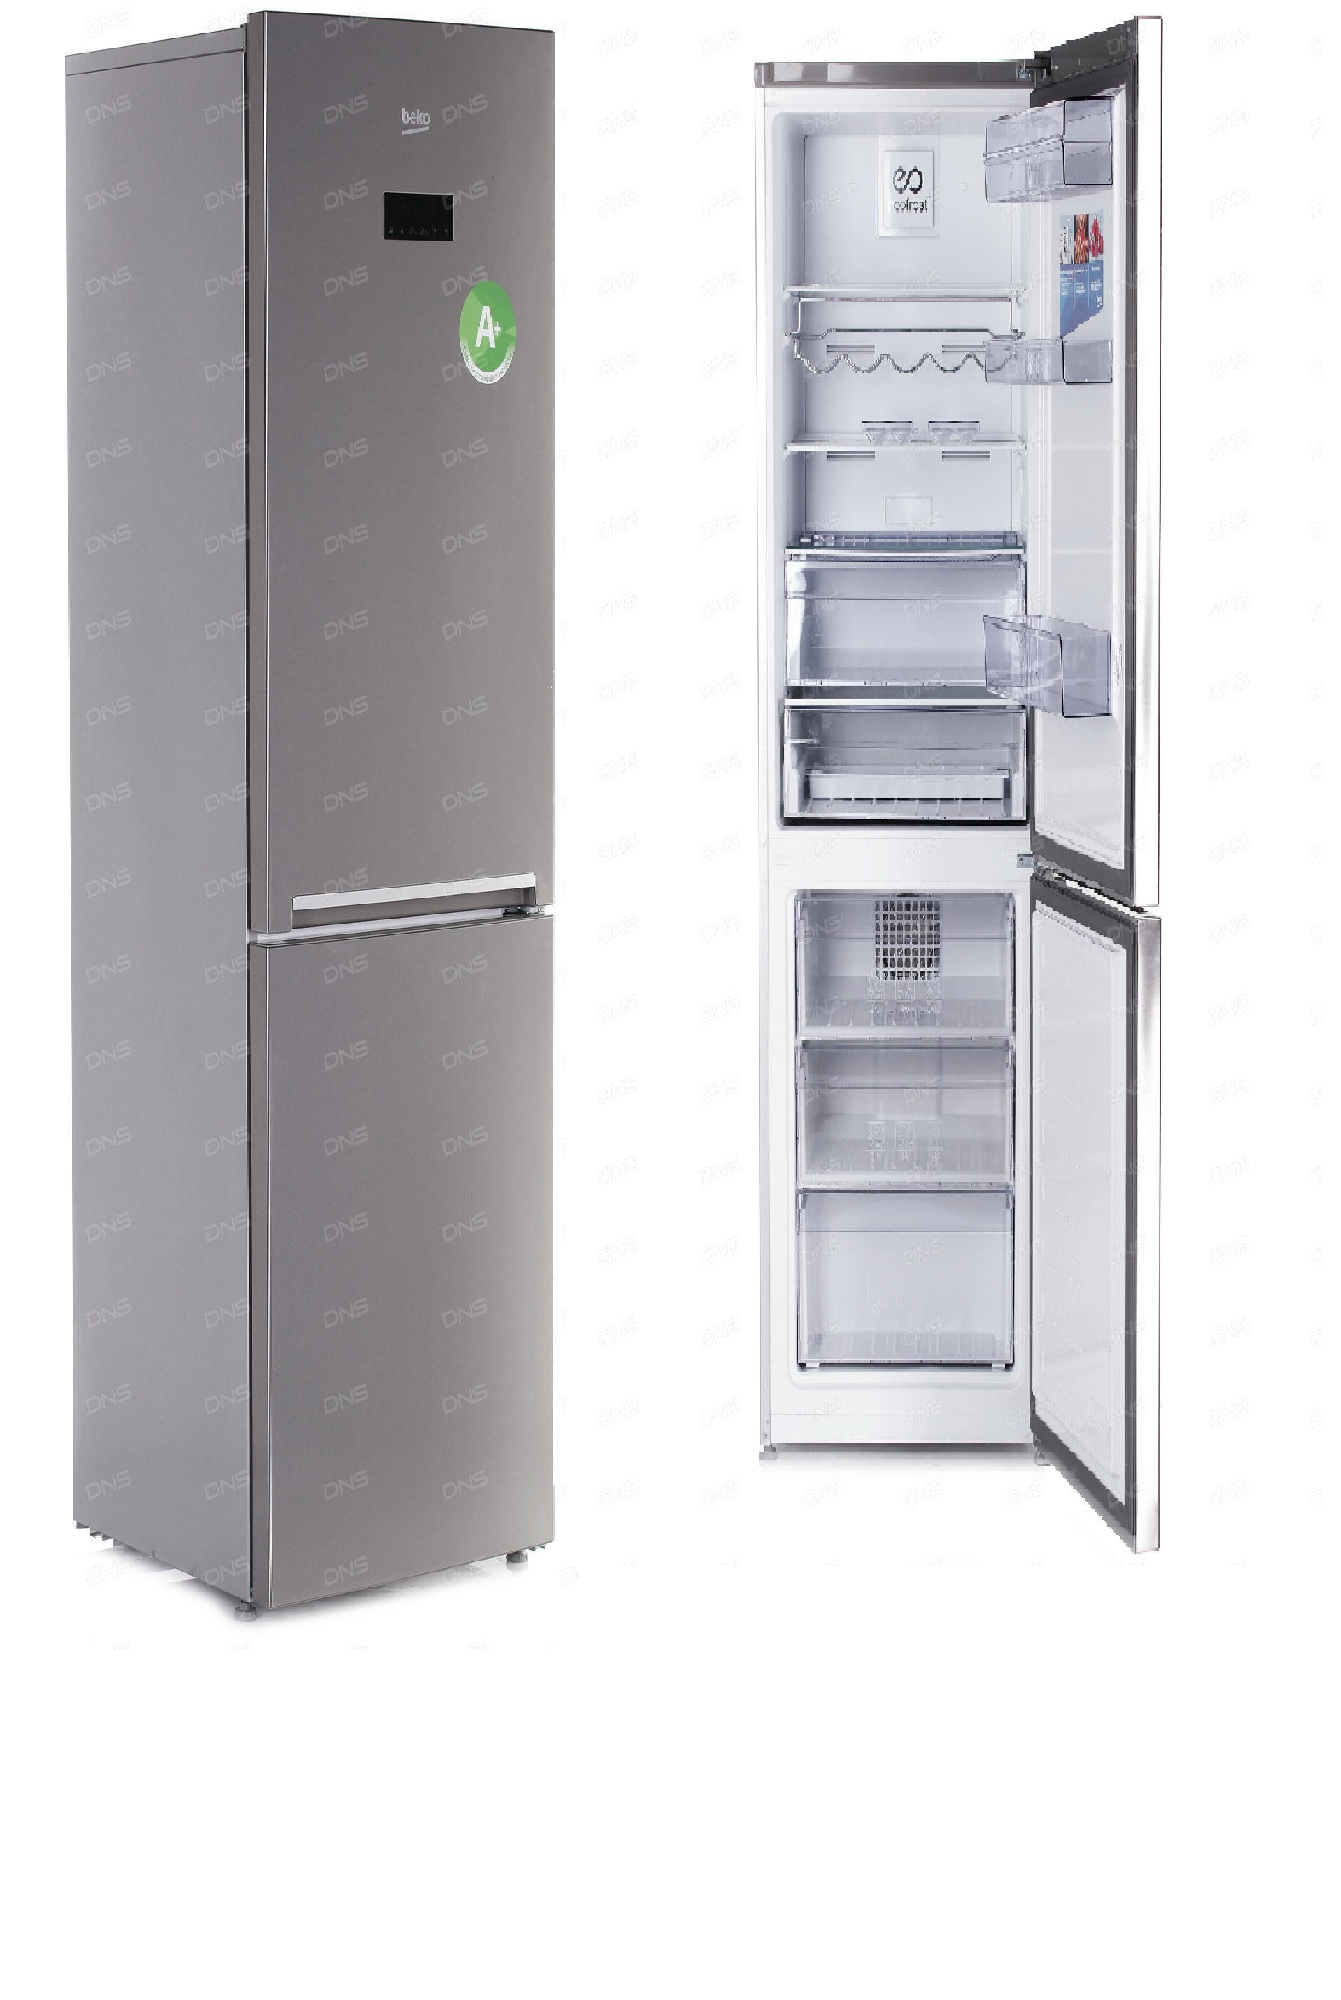 холодильник beko rcnk365e20zx, купить в Красноярске холодильник beko rcnk365e20zx,  купить в Красноярске дешево холодильник beko rcnk365e20zx, купить в Красноярске минимальной цене холодильник beko rcnk365e20zx